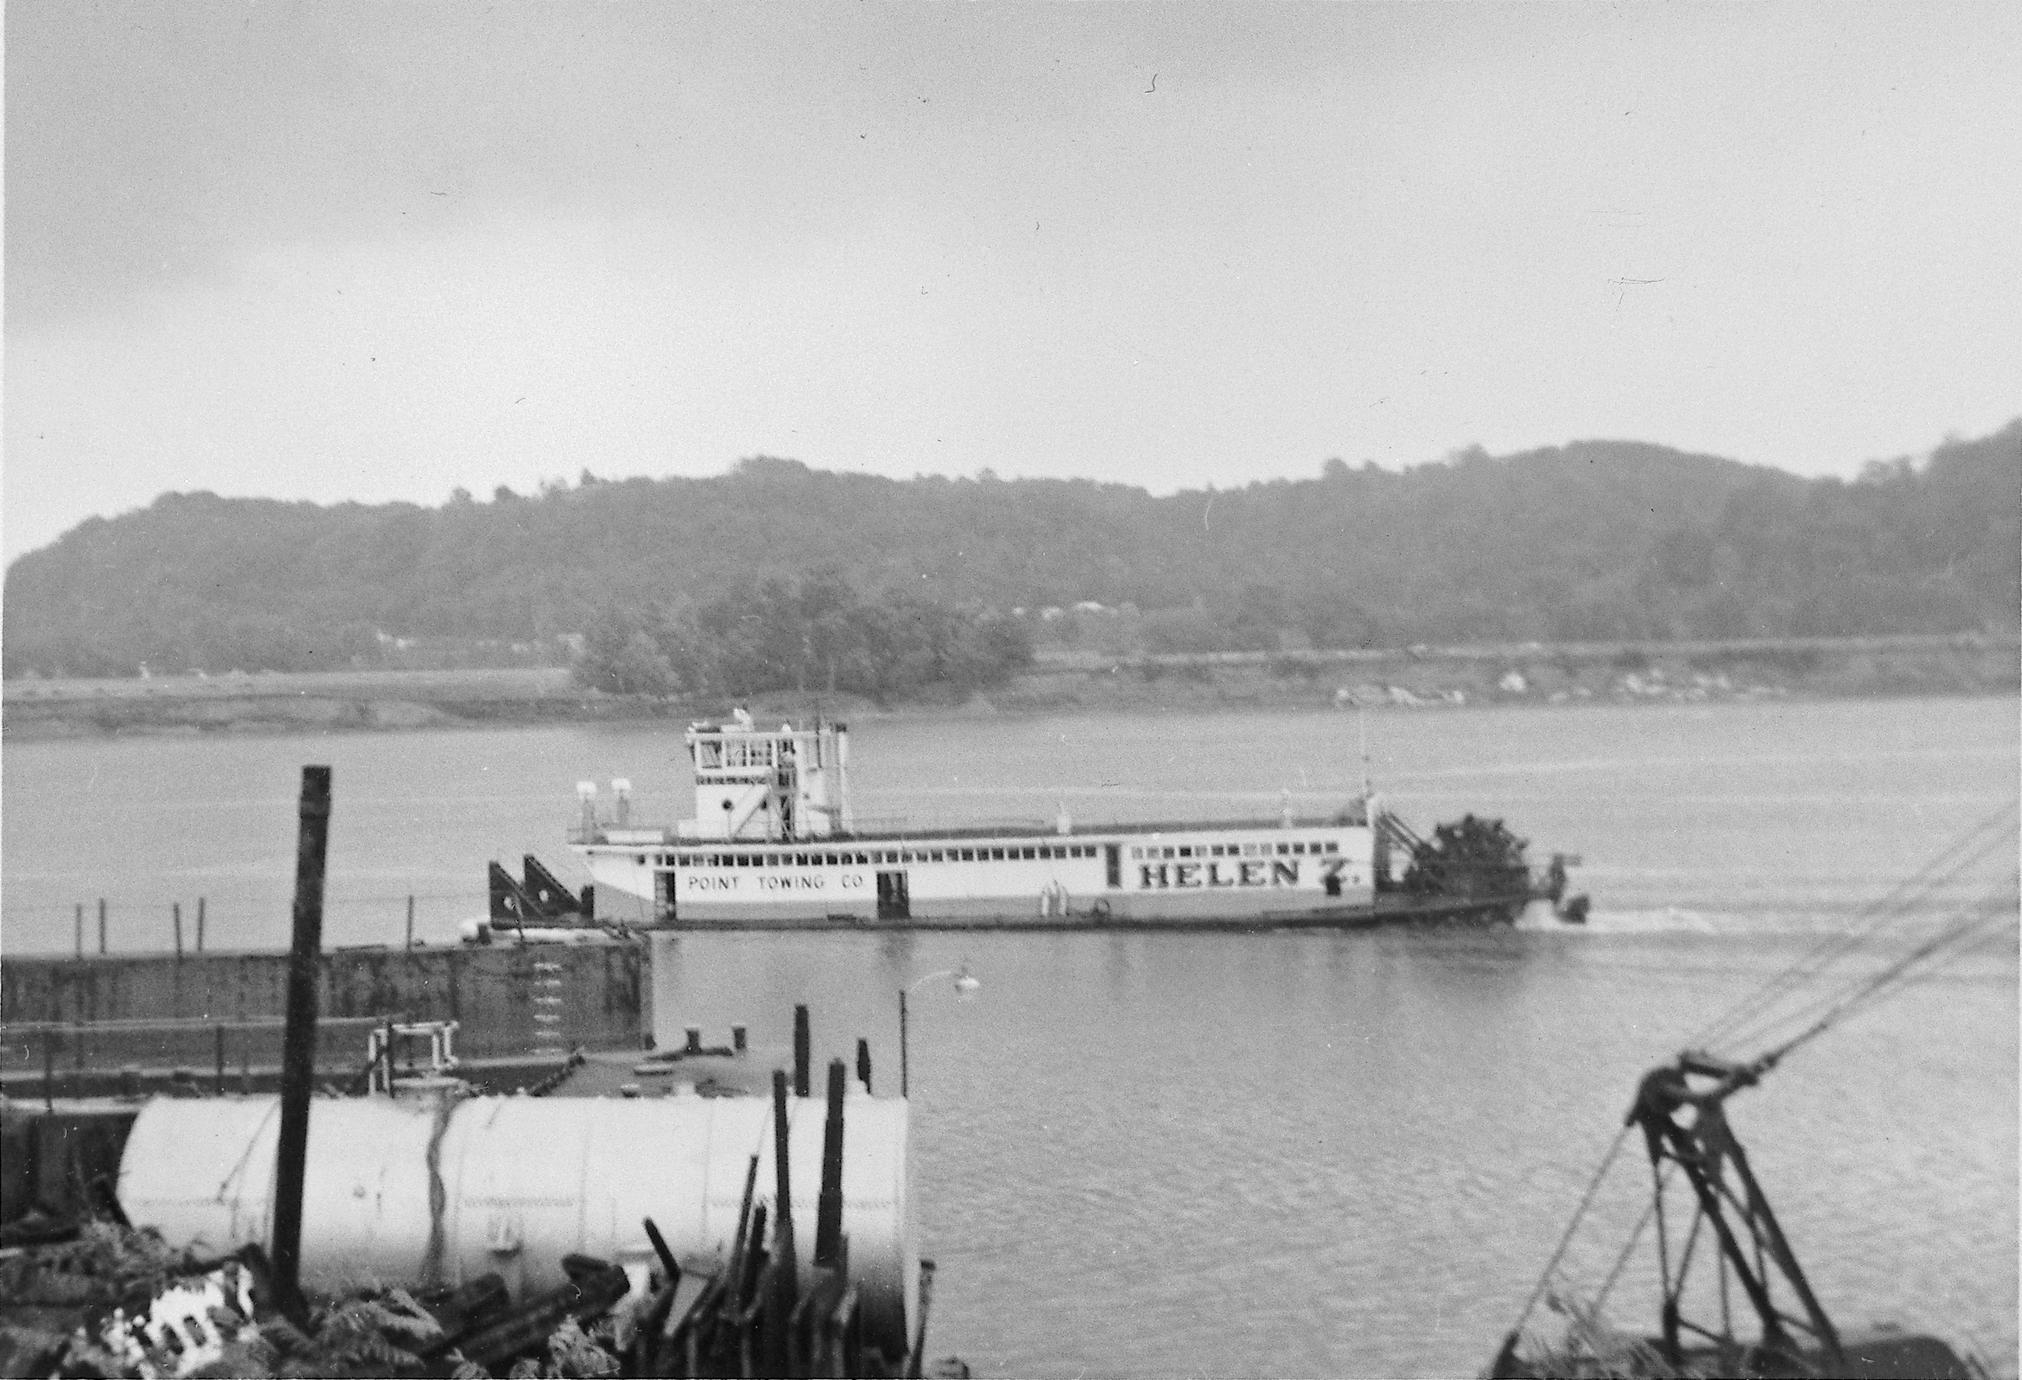 Helen Z. (Towboat, ca. 1941)